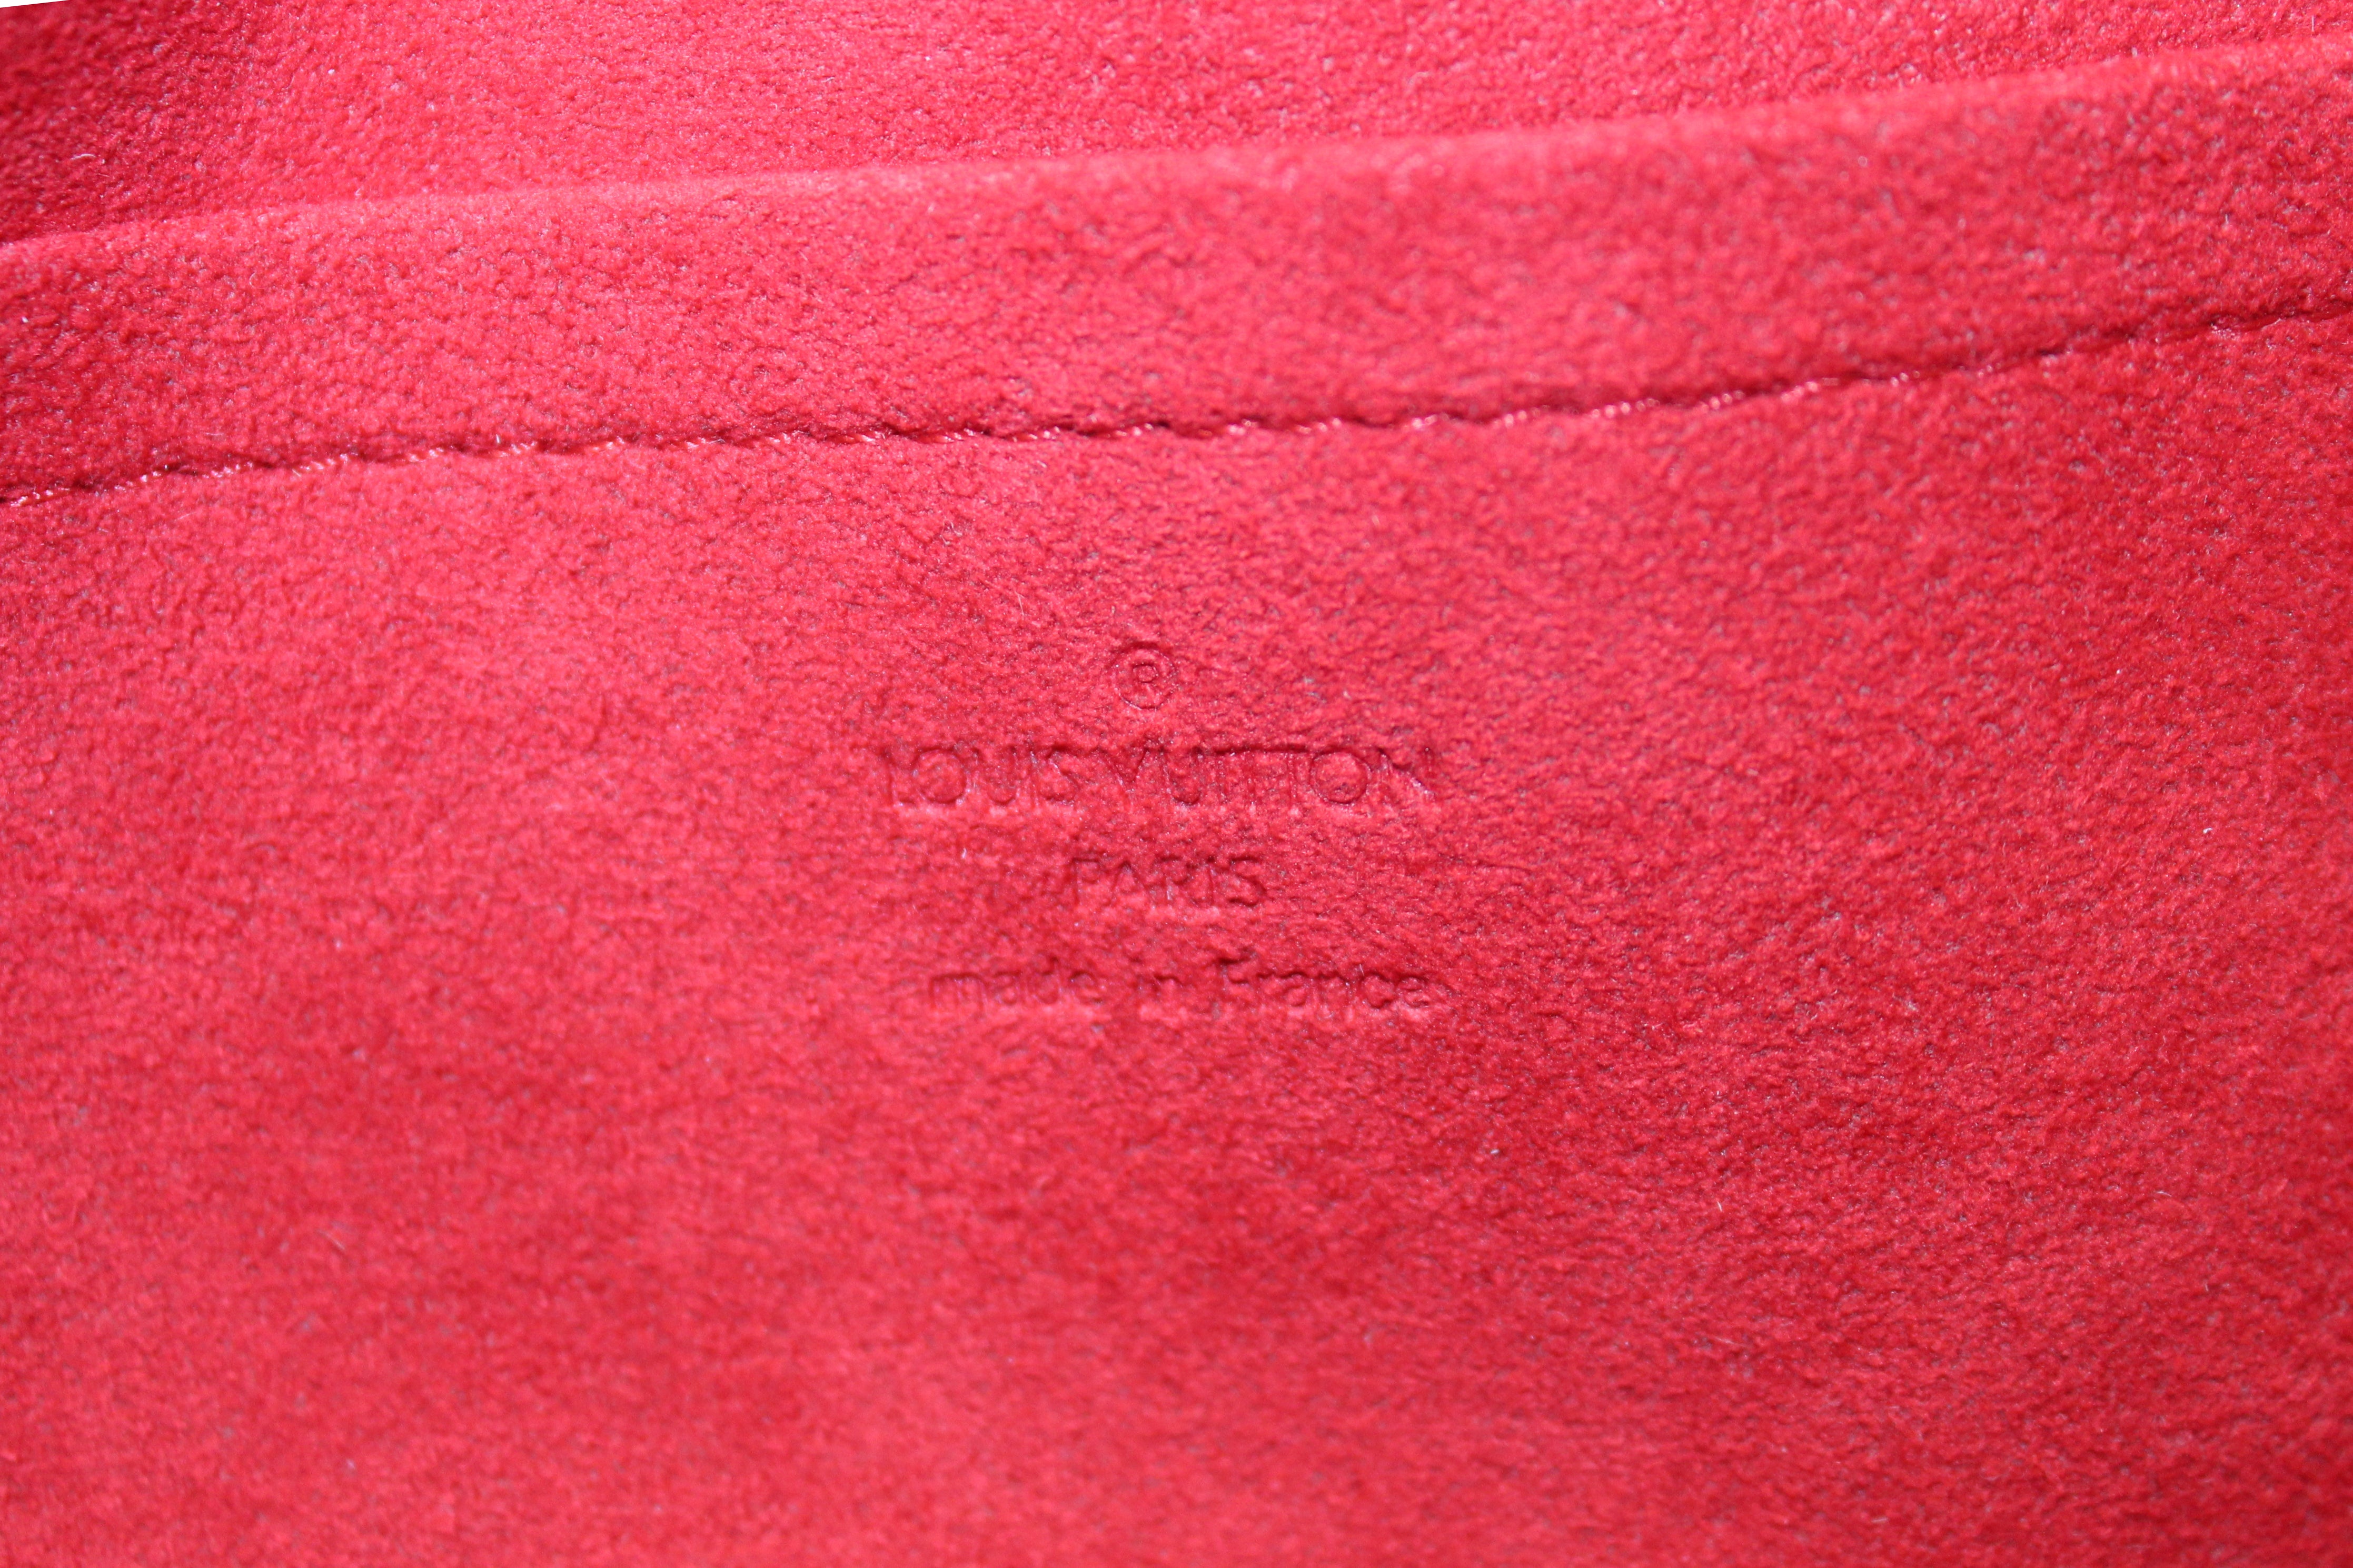 Authentic NEW Louis Vuitton Damier Ebene Canvas Ravello PM Bag